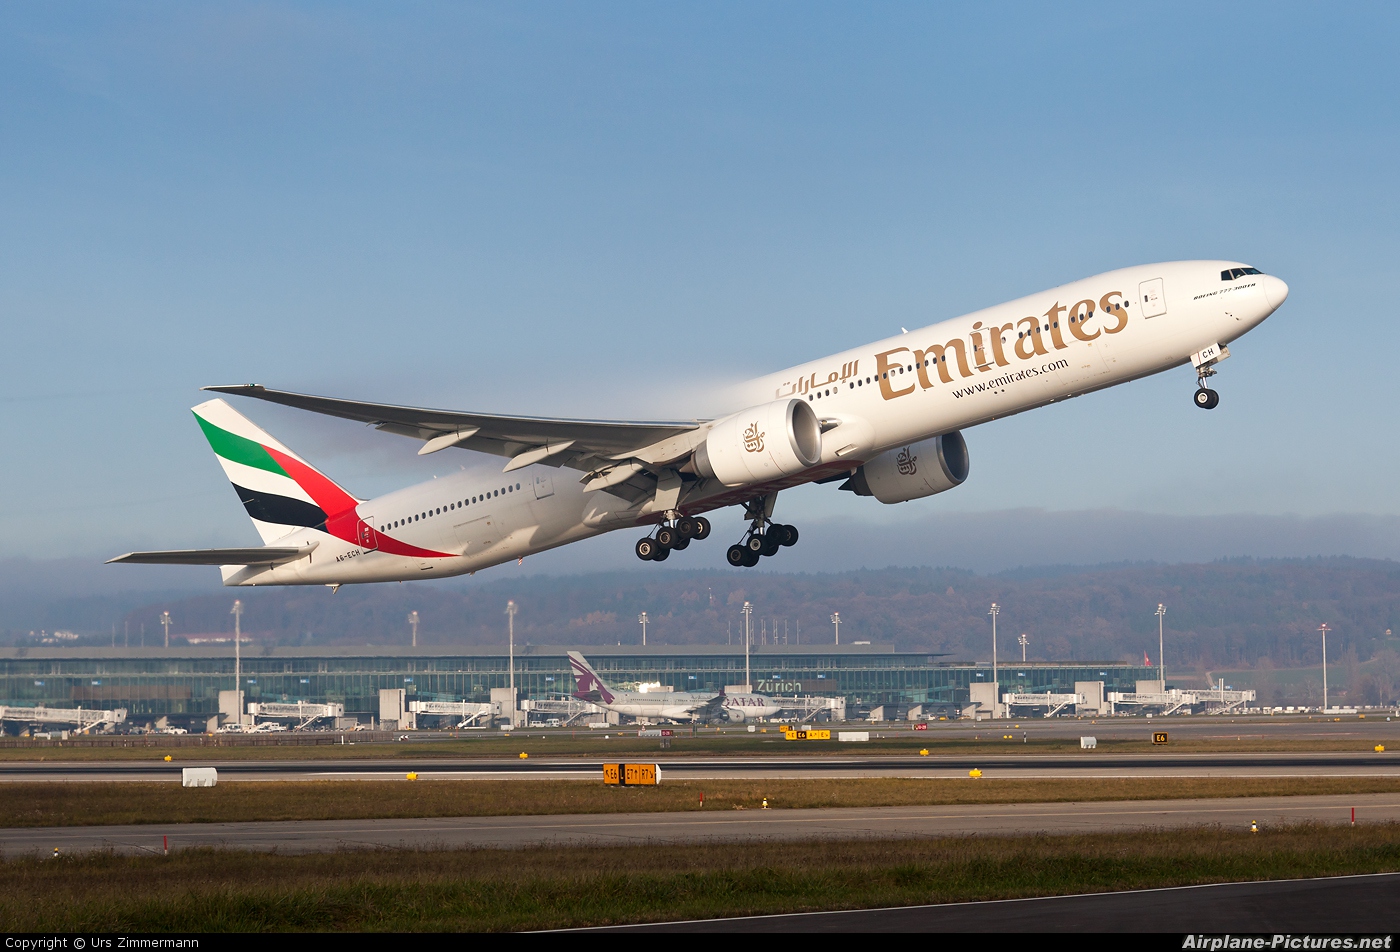 Emirates Airlines A6-ECH aircraft at Zurich